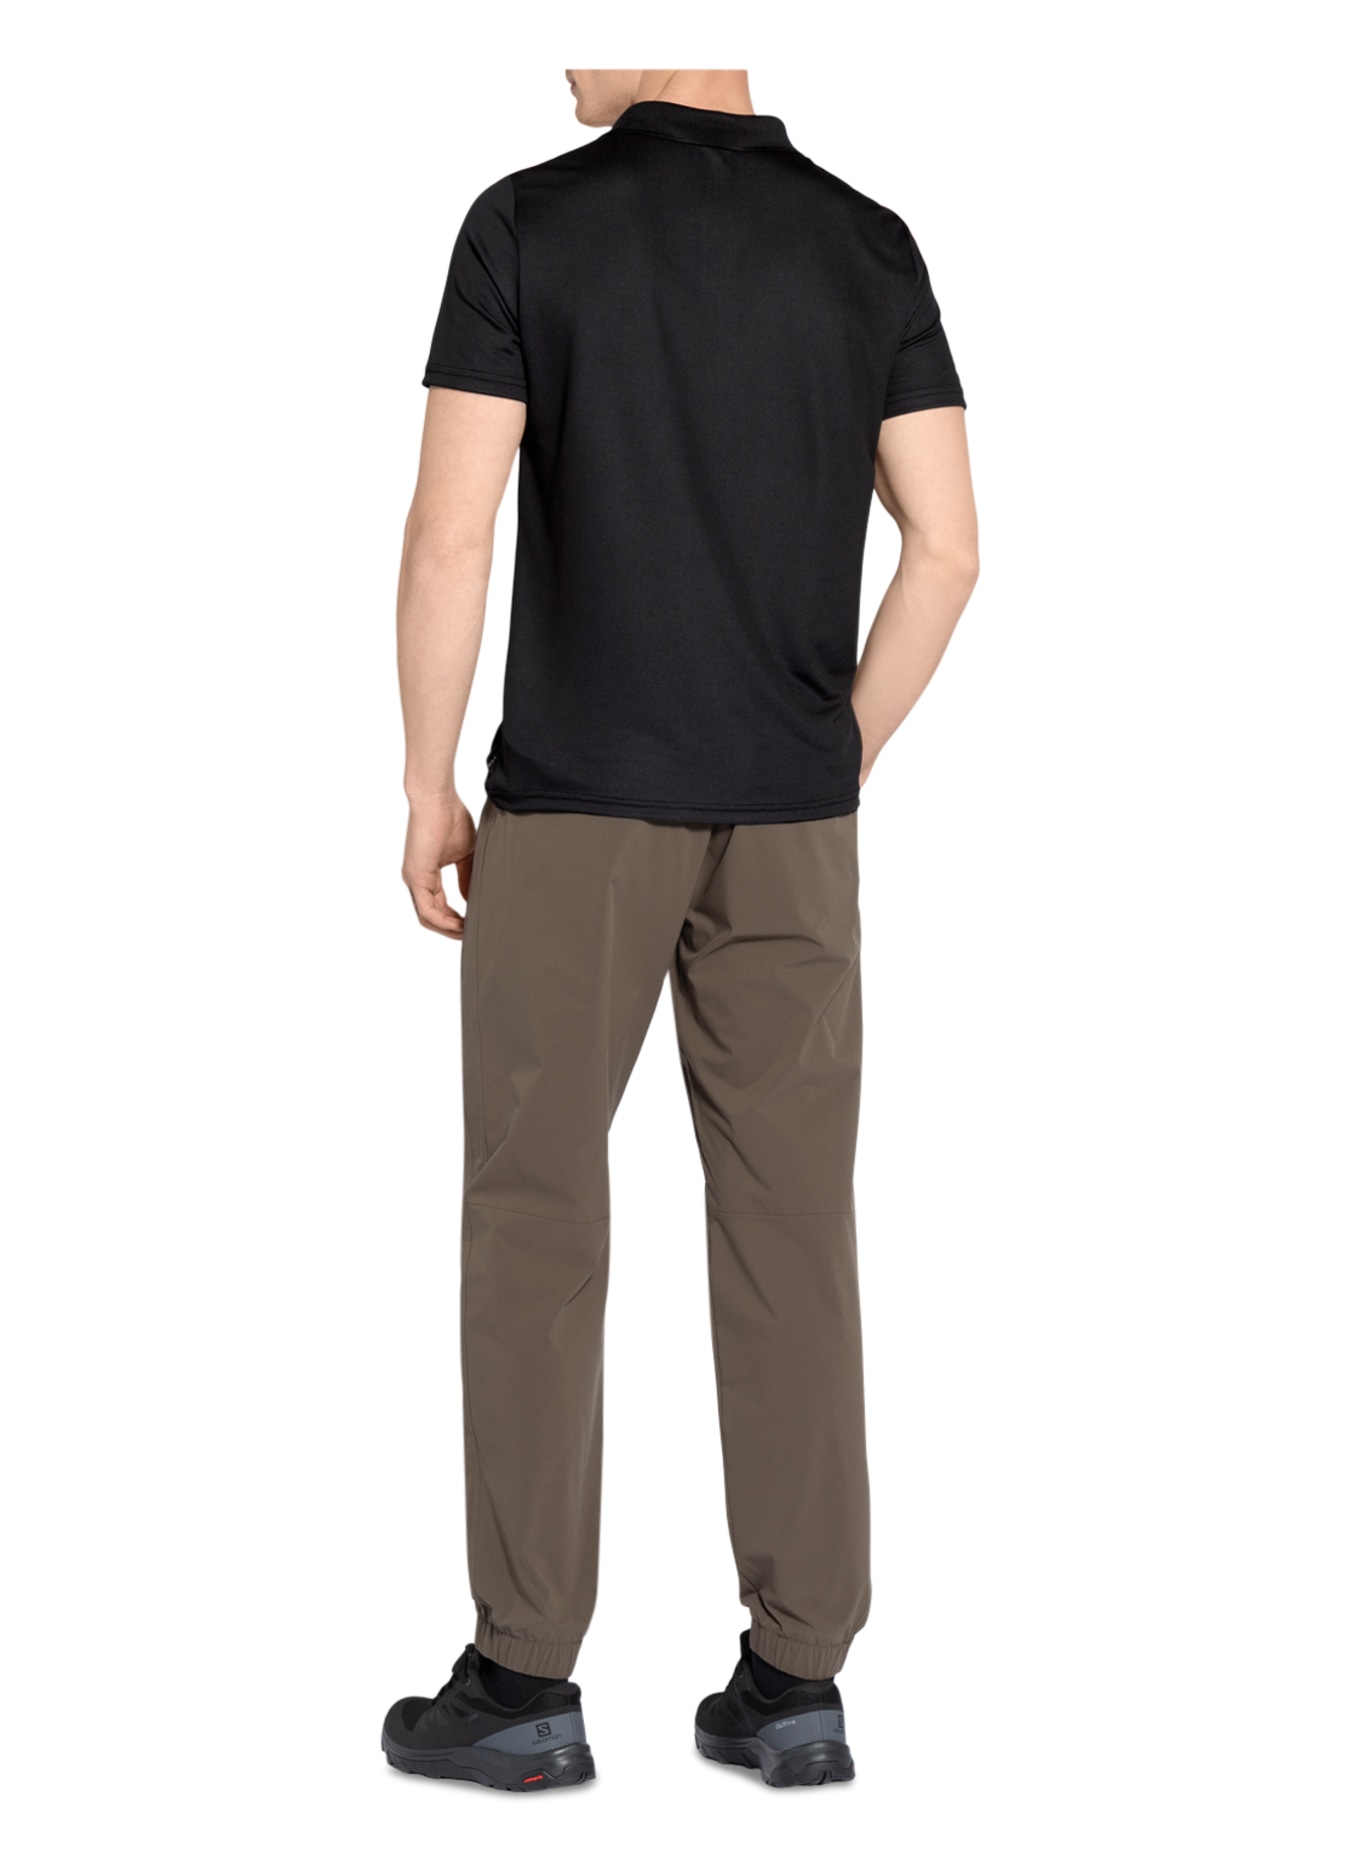 odlo Performance polo shirt F-DRY with UV protection 30+, Color: BLACK (Image 3)